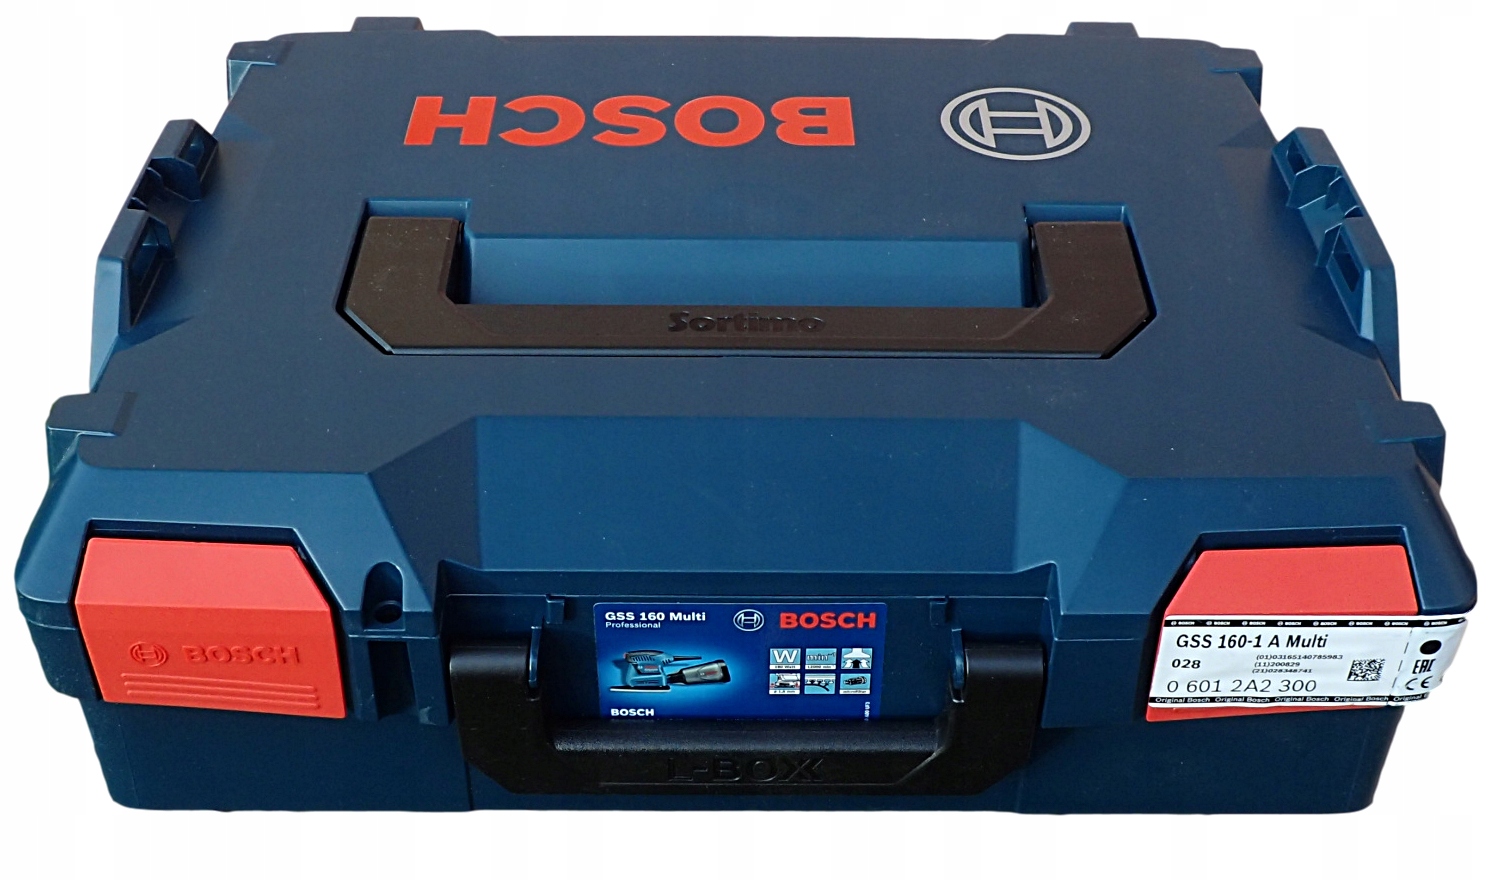 Купить бош 10. GSS 18v-10. GSS 160-1 A. Bosch GSS 18v-10 Соло (06019d0200) без акк. И З.У. Bosch GSS 130pe Metal Case.